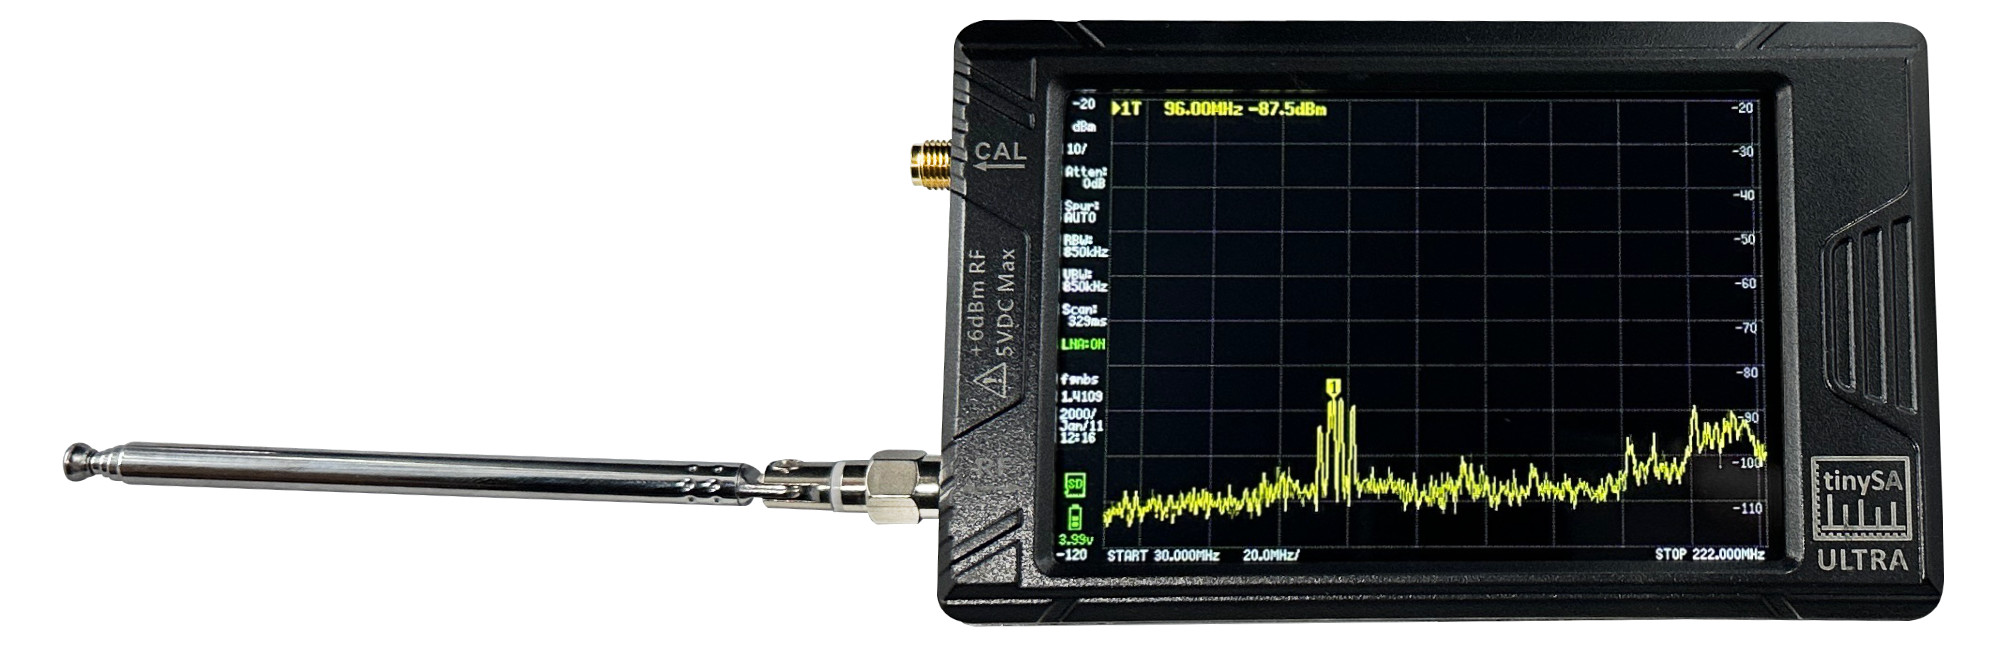 tinySA ultra spectrum analyzer by qro.cz hamparts.shop